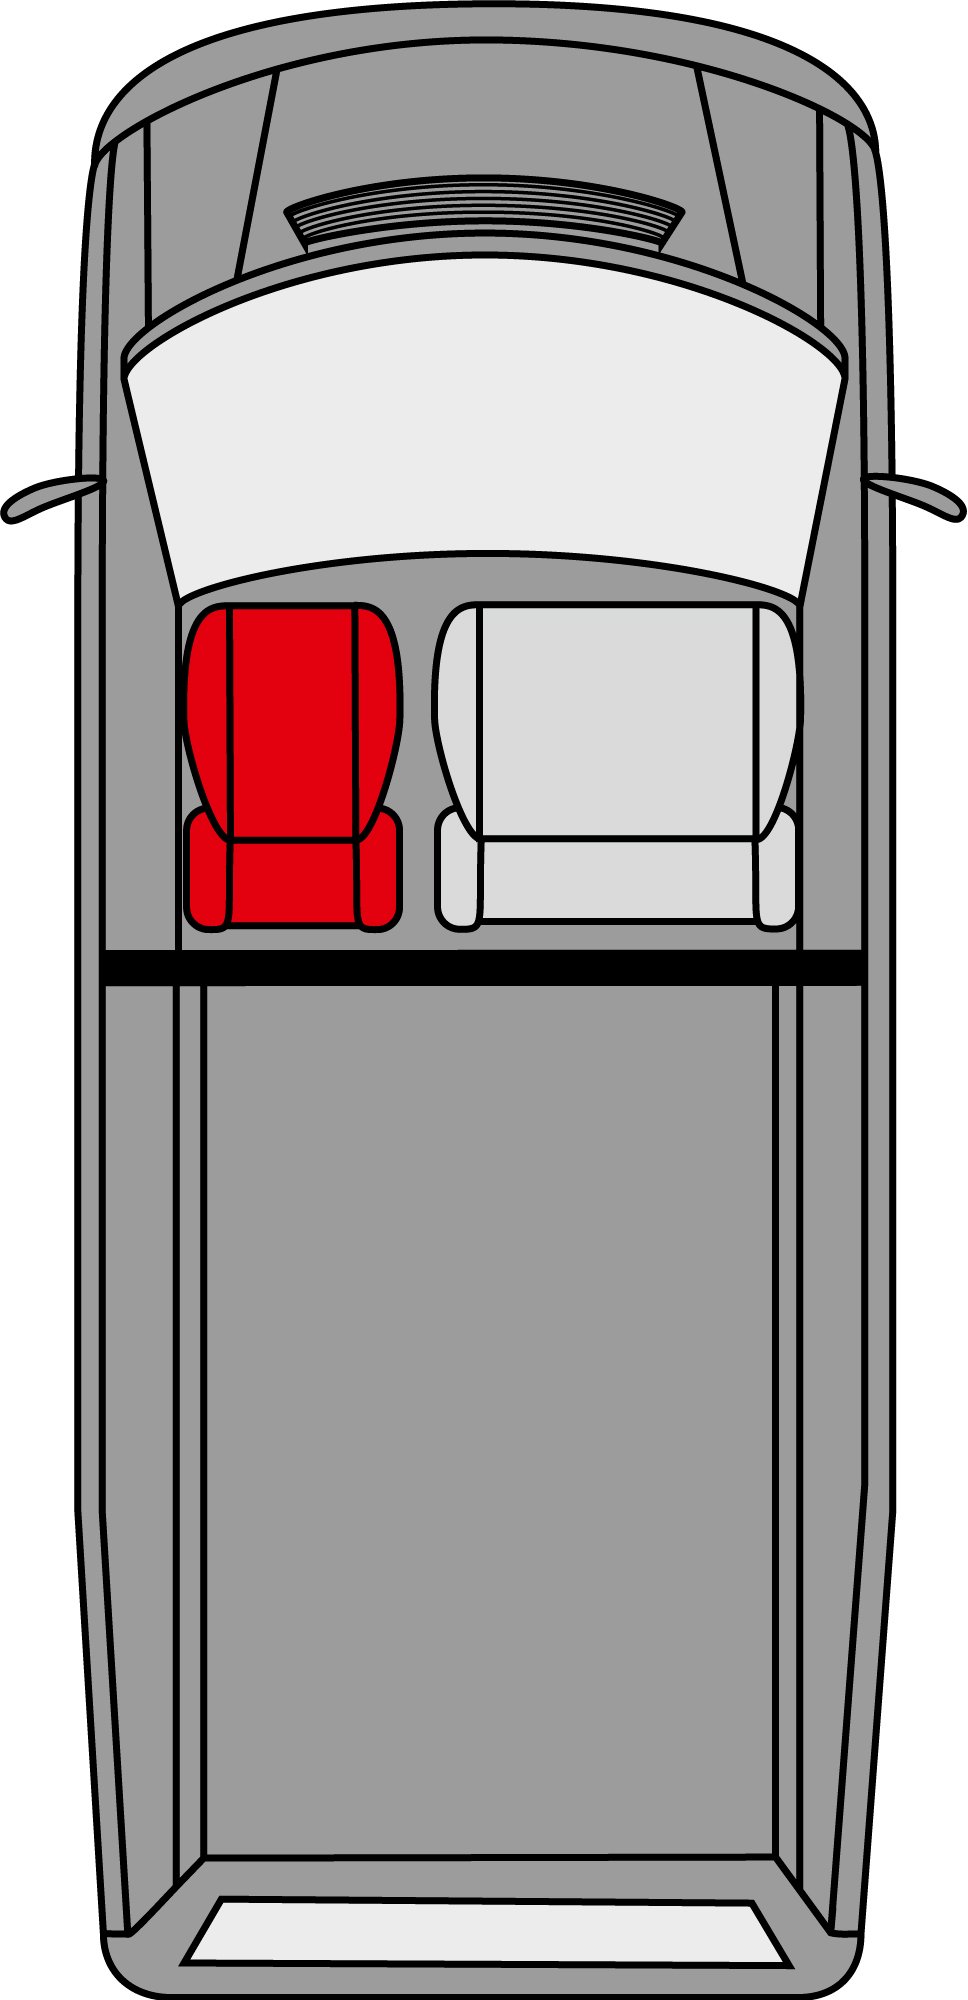 Autoschonbezug Transporter aus Stoff für Mercedes Vito 447, Einzelsitz mit Armlehne innen